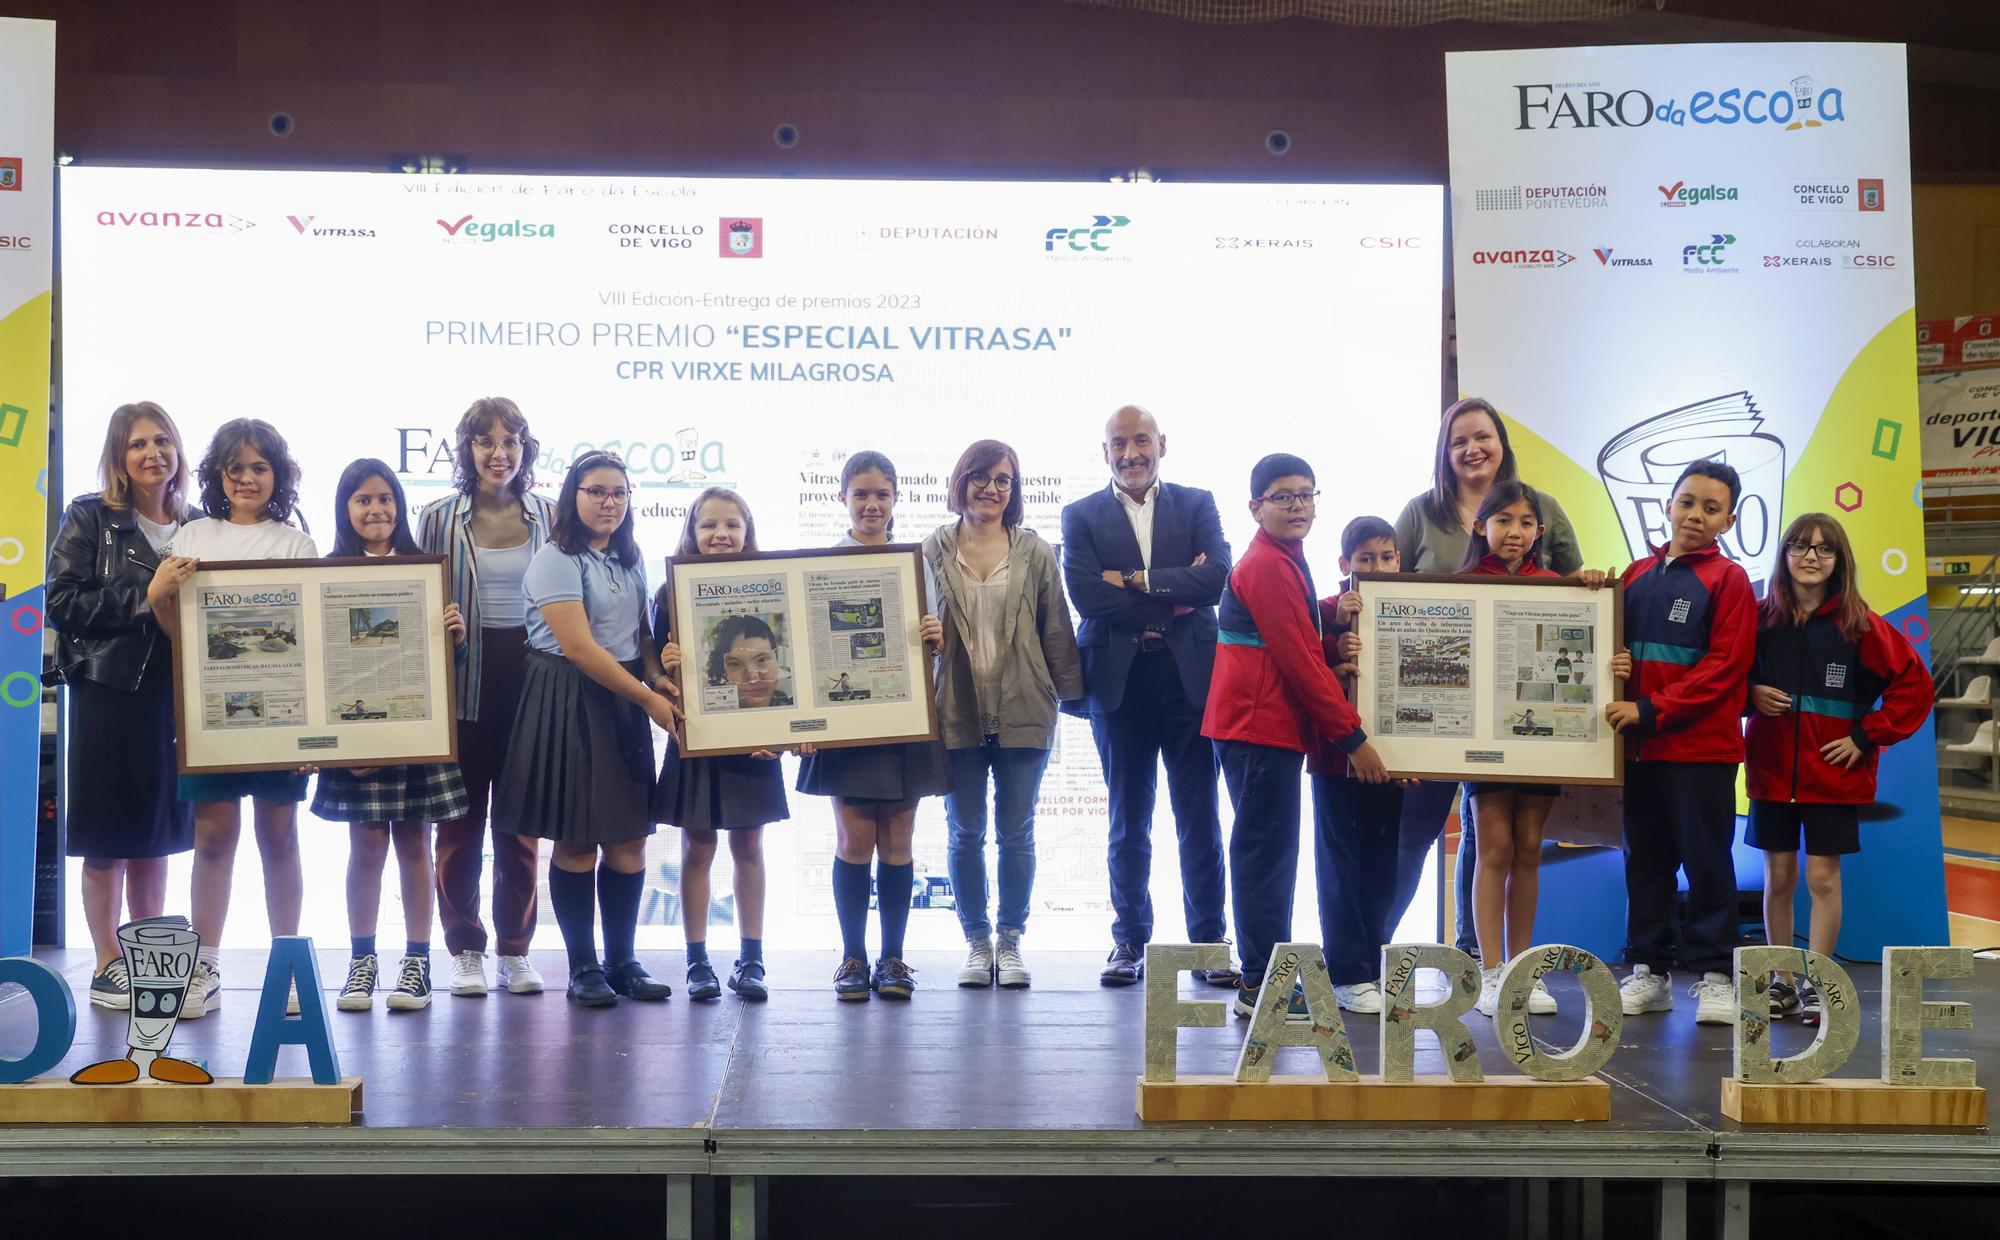 Premio Especial Vitrasa: Virxe Milagrosa, Quiñones de León y Vigo